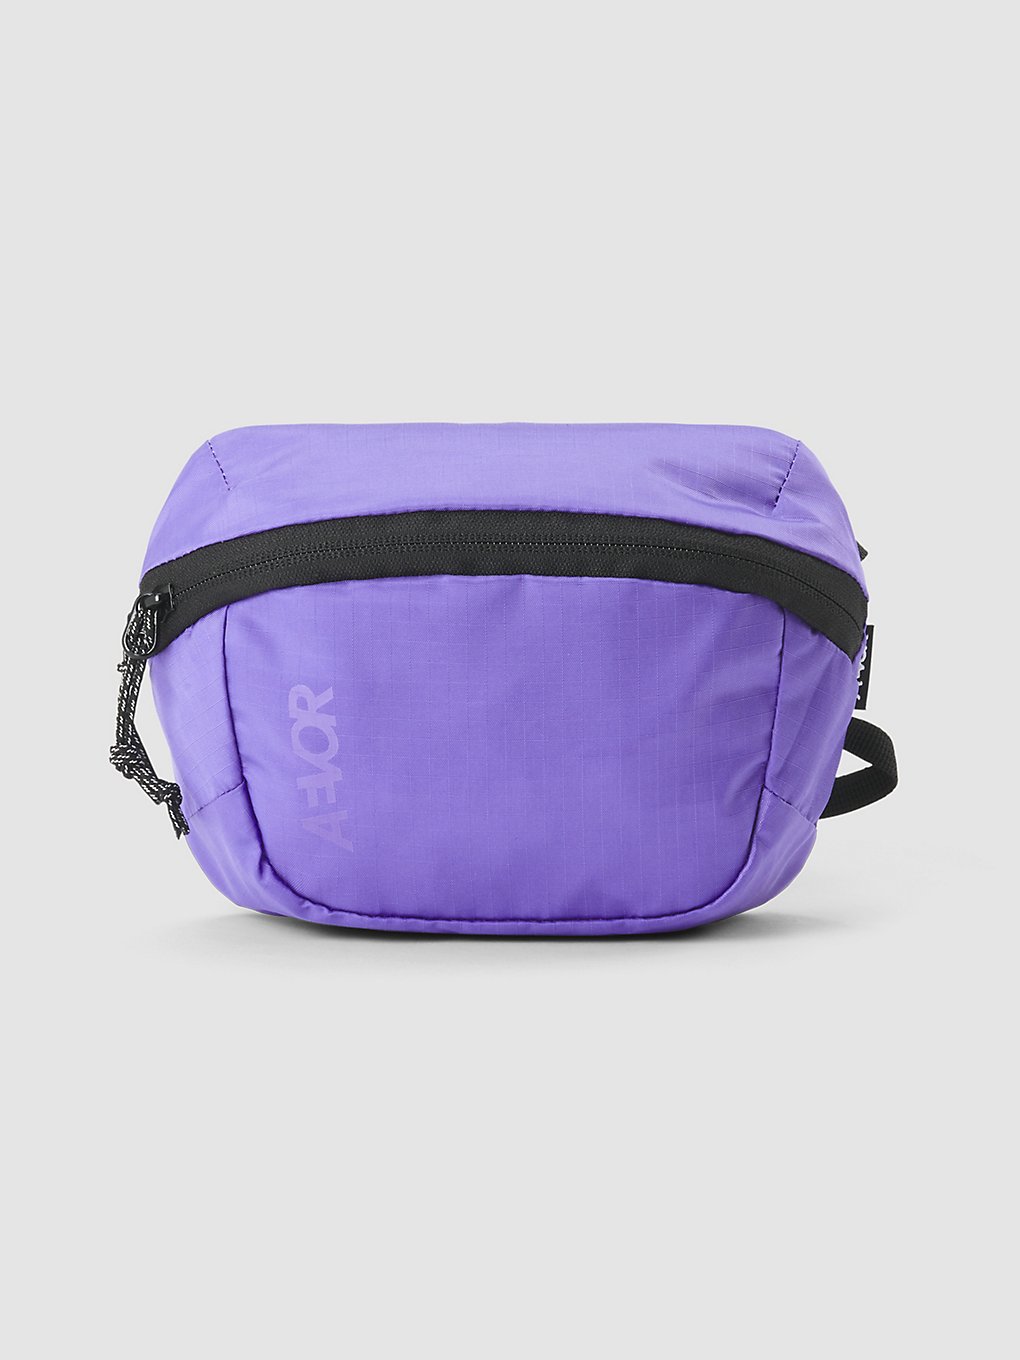 AEVOR Move Hip Umhängetasche Backpack ripstop purple kaufen